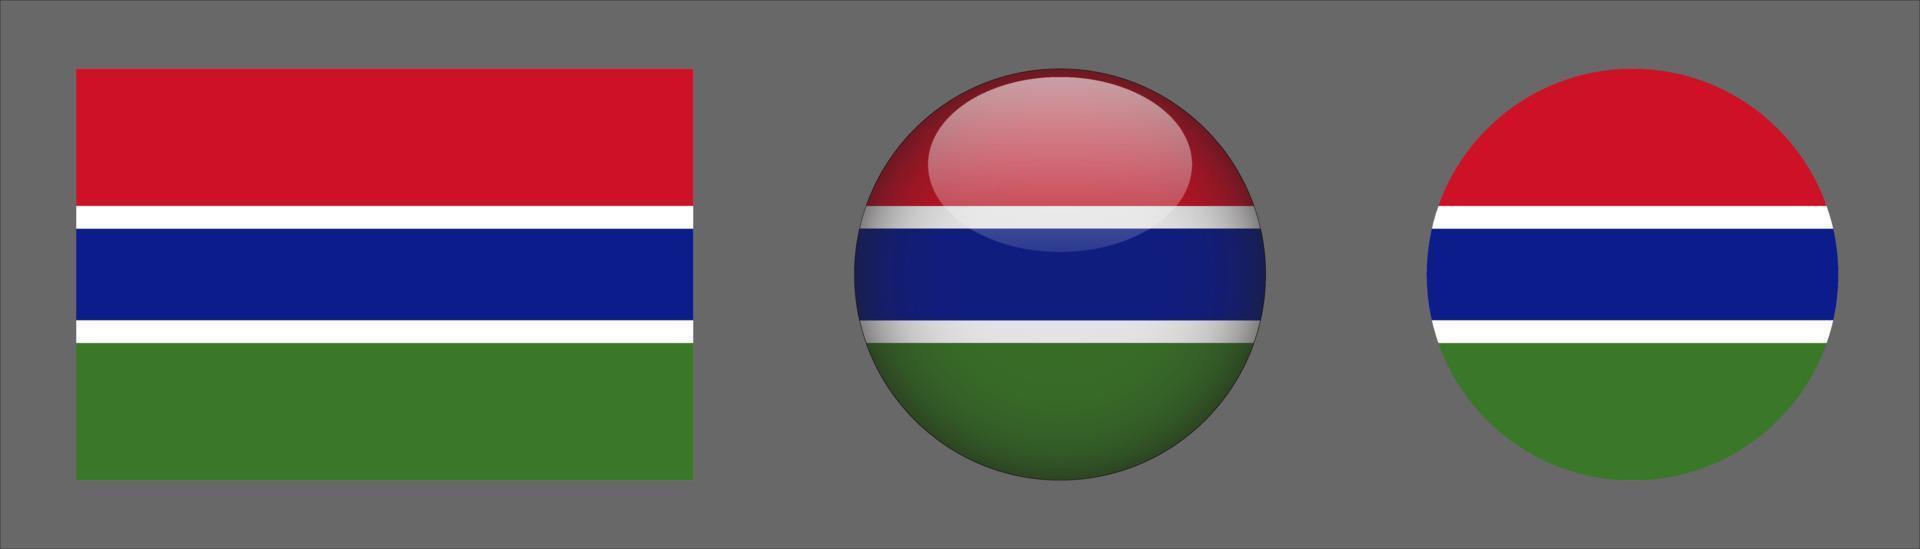 Colección de conjunto de bandera de Gambia, relación de tamaño original, redondeado en 3D y redondeado plano vector